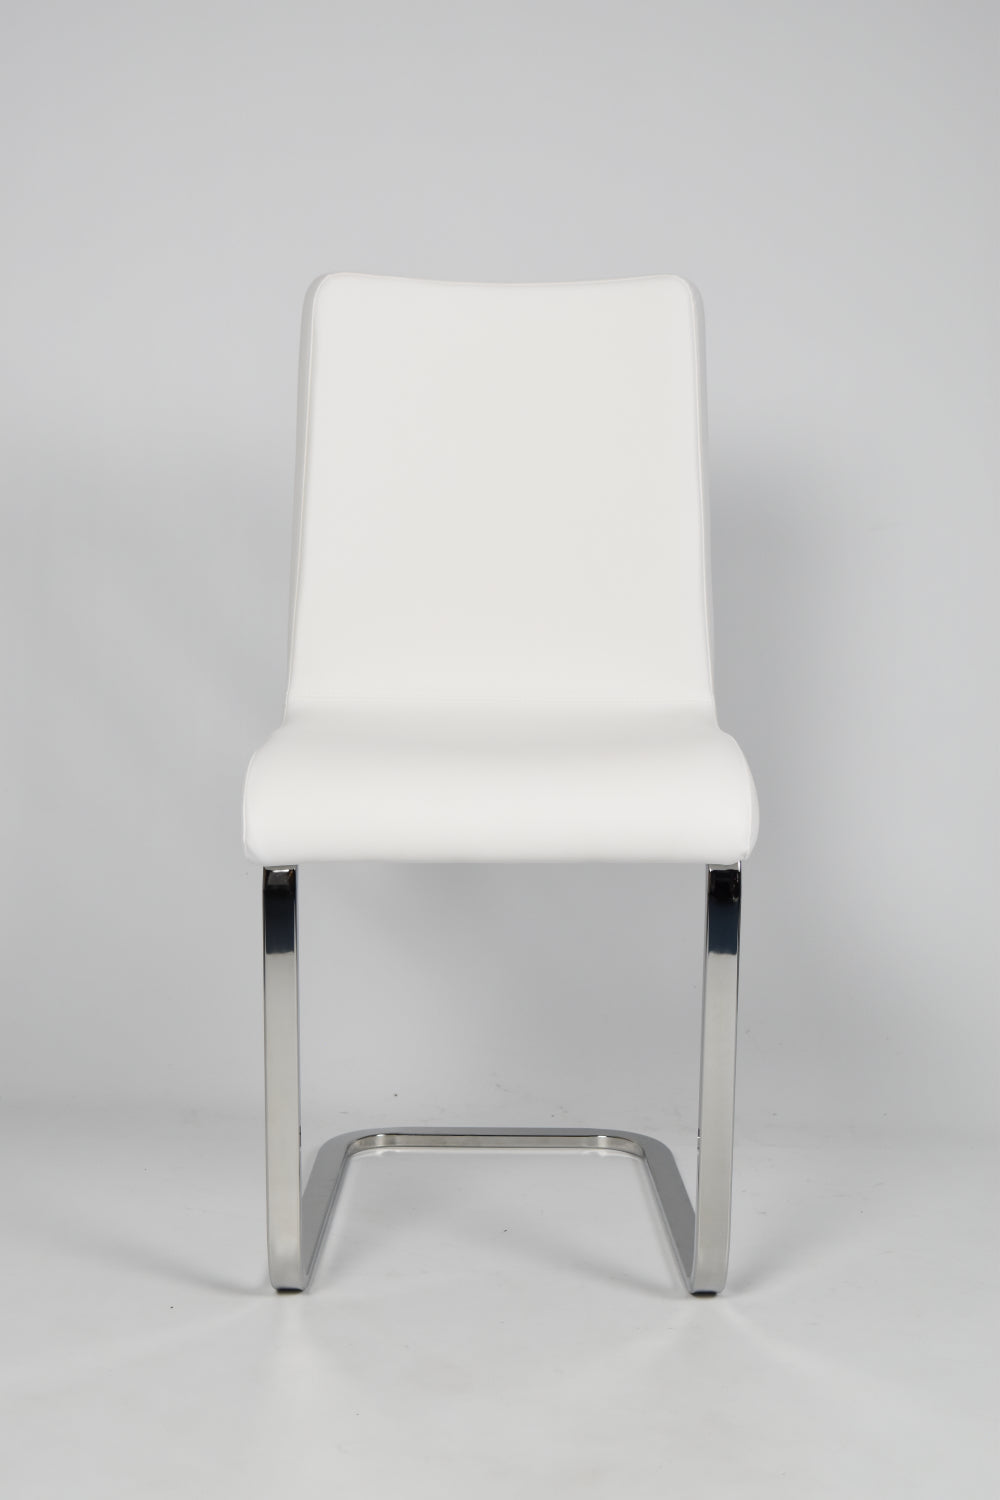 Tommychairs - Set 2 sillas Greta Cantilever con Patas de Acero Cromado de Alta Resistencian, Asiento en Madera Multicapa, tapizado en Polipiel Blanca